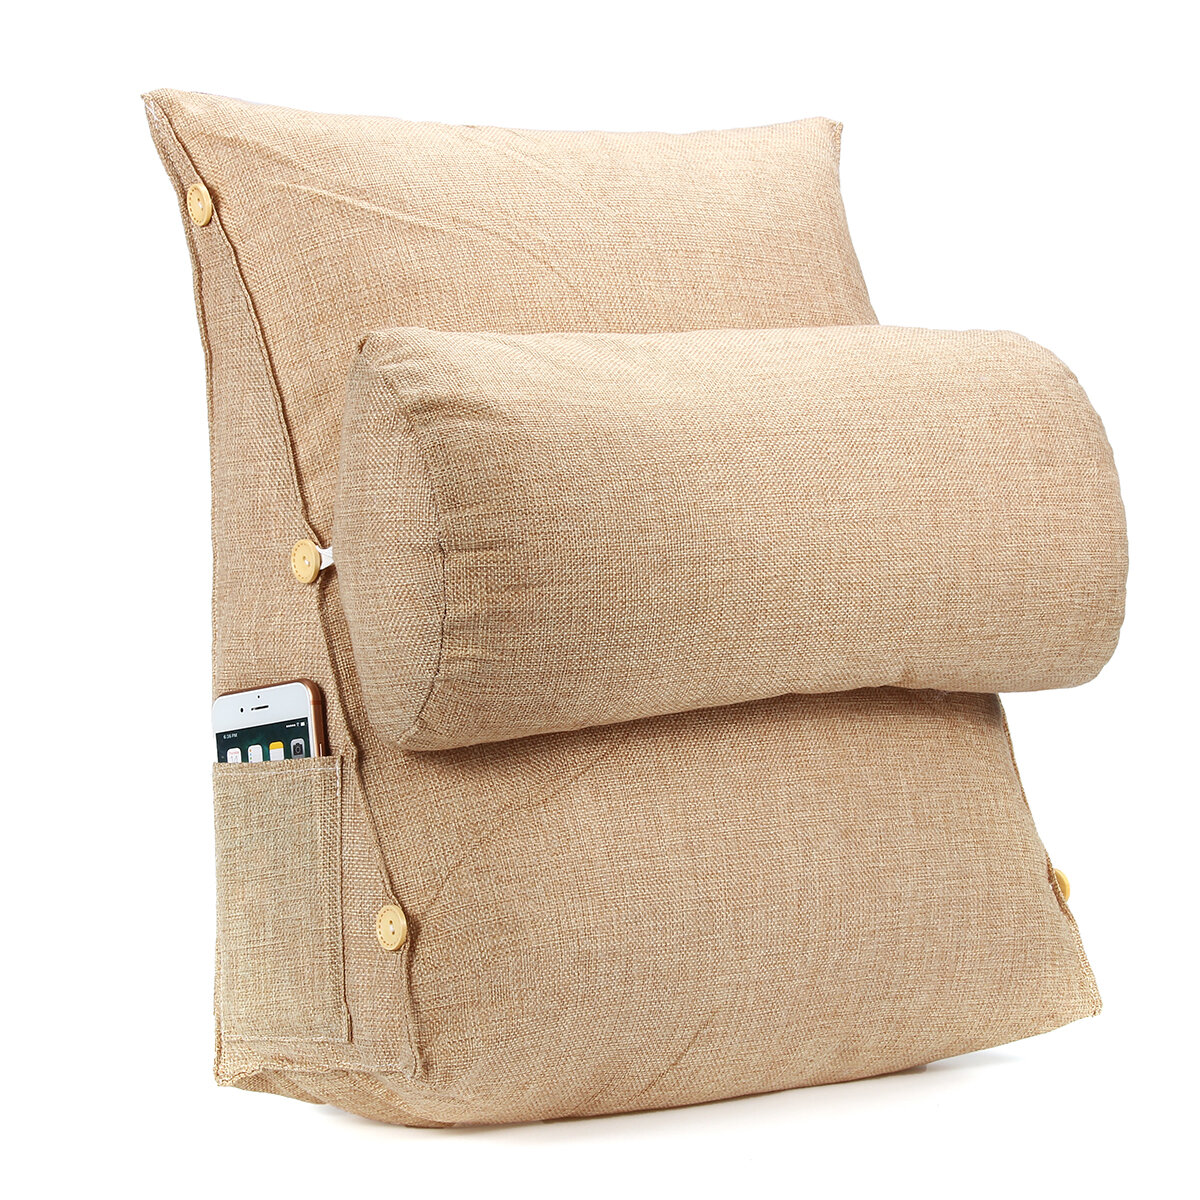 Adjustable Back Cushion Back Pillow Backrest Neck Support Sofa Bed Office